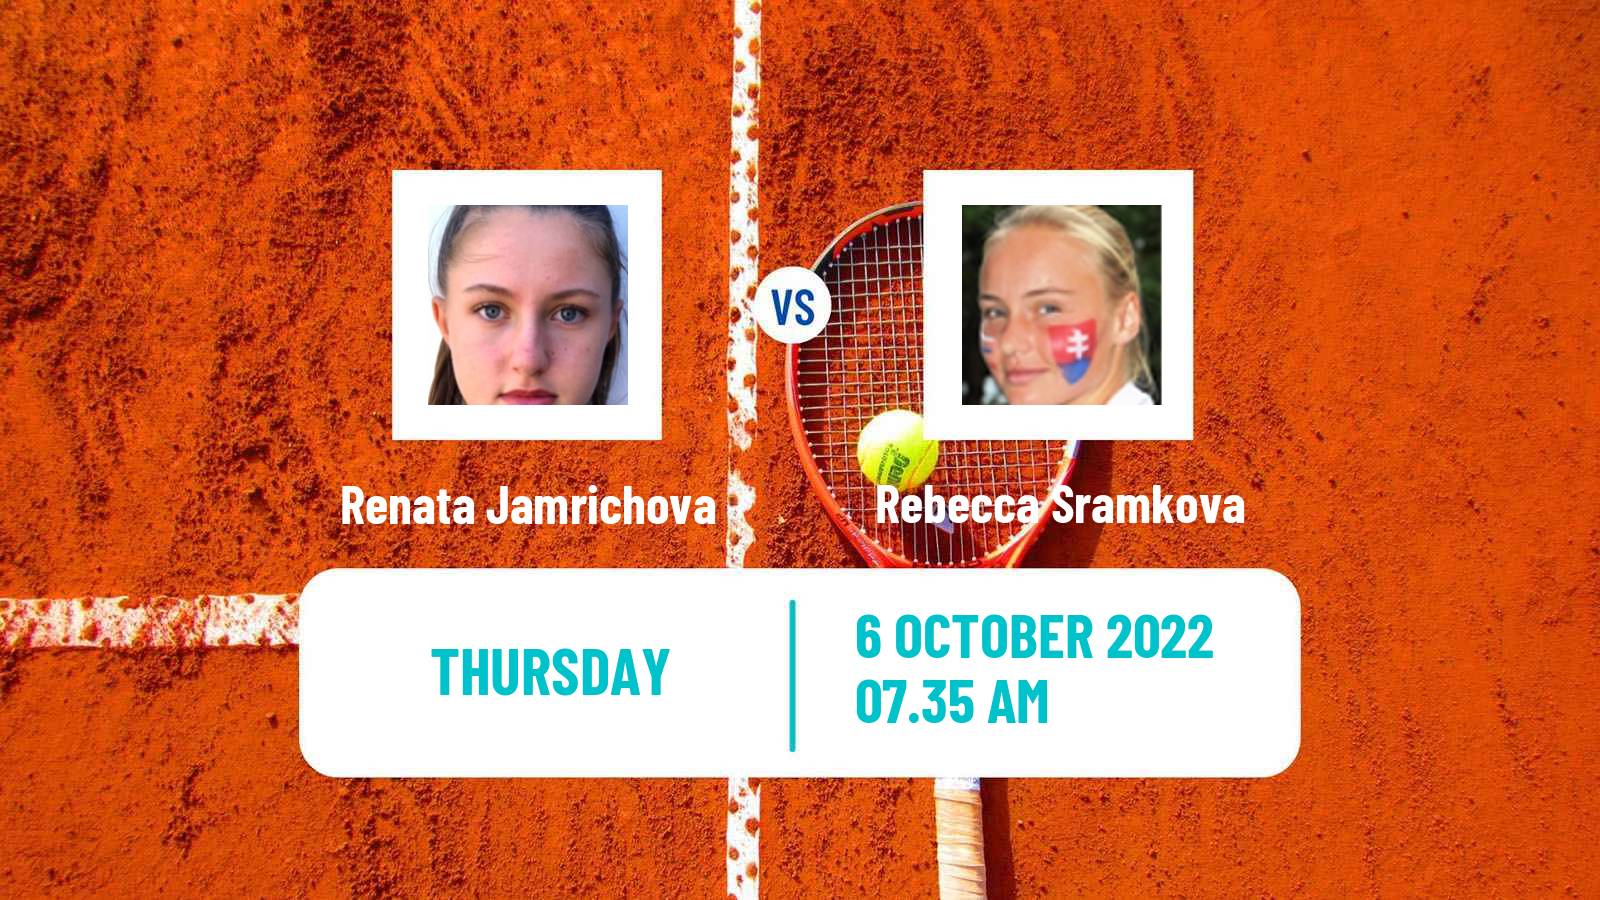 Tennis ITF Tournaments Renata Jamrichova - Rebecca Sramkova